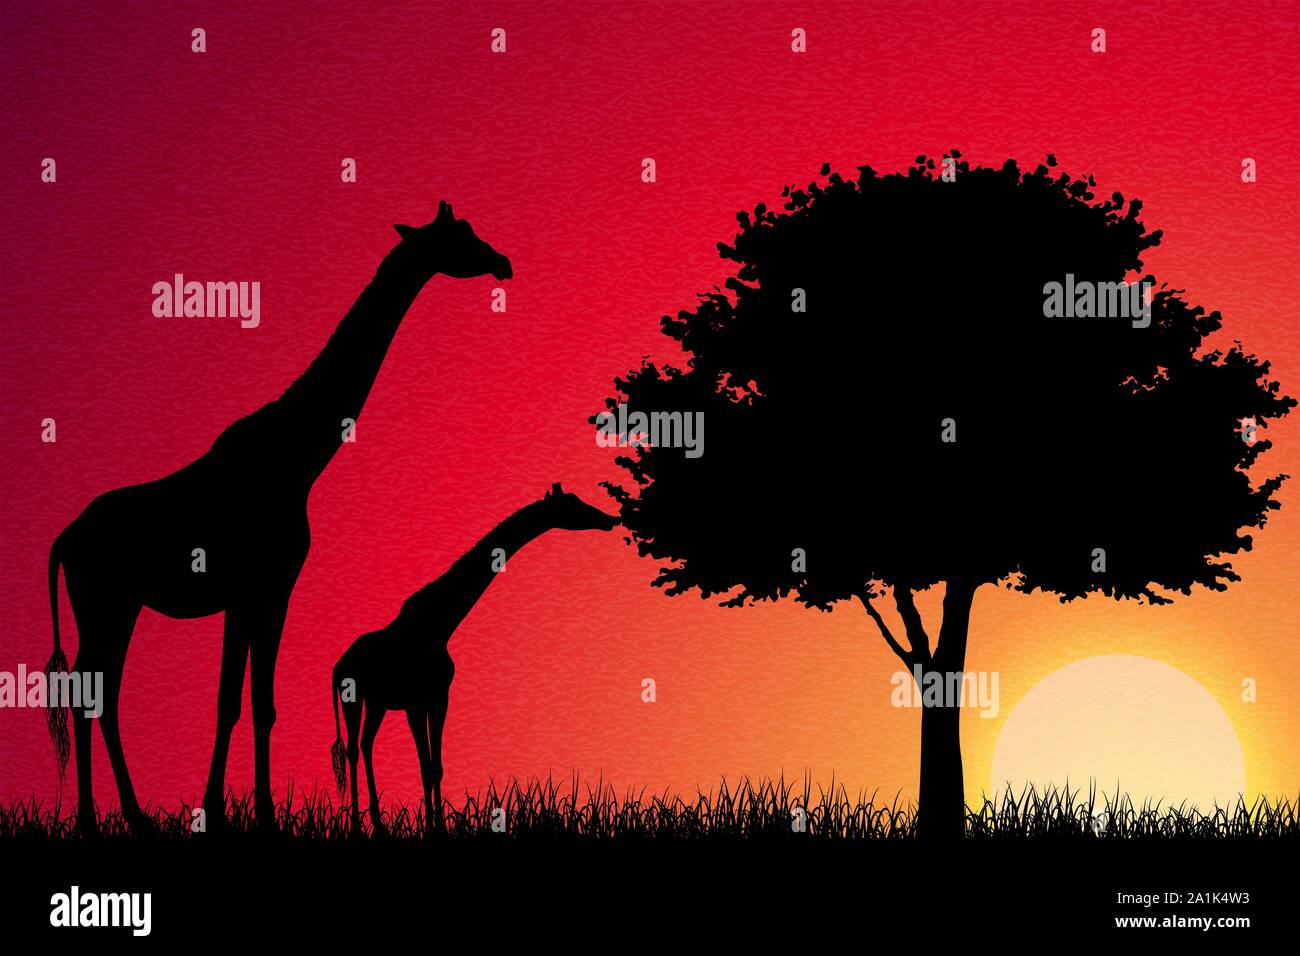 Giraffes in Africa vector background Stock Vector